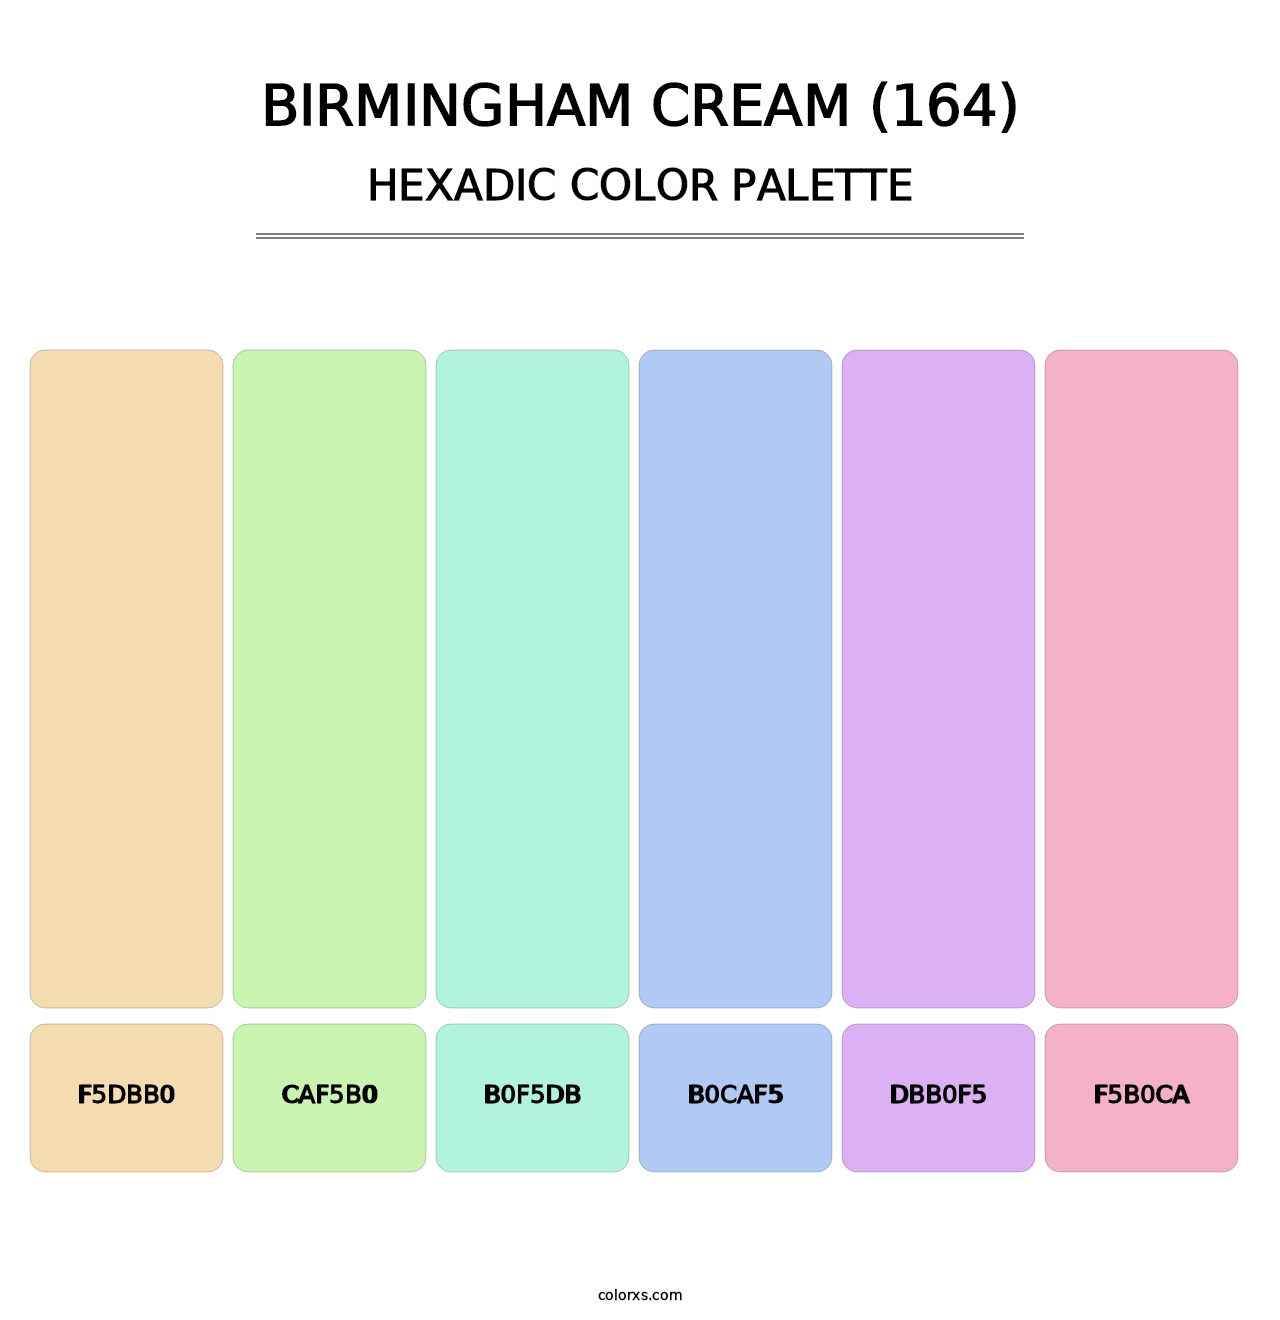 Birmingham Cream (164) - Hexadic Color Palette